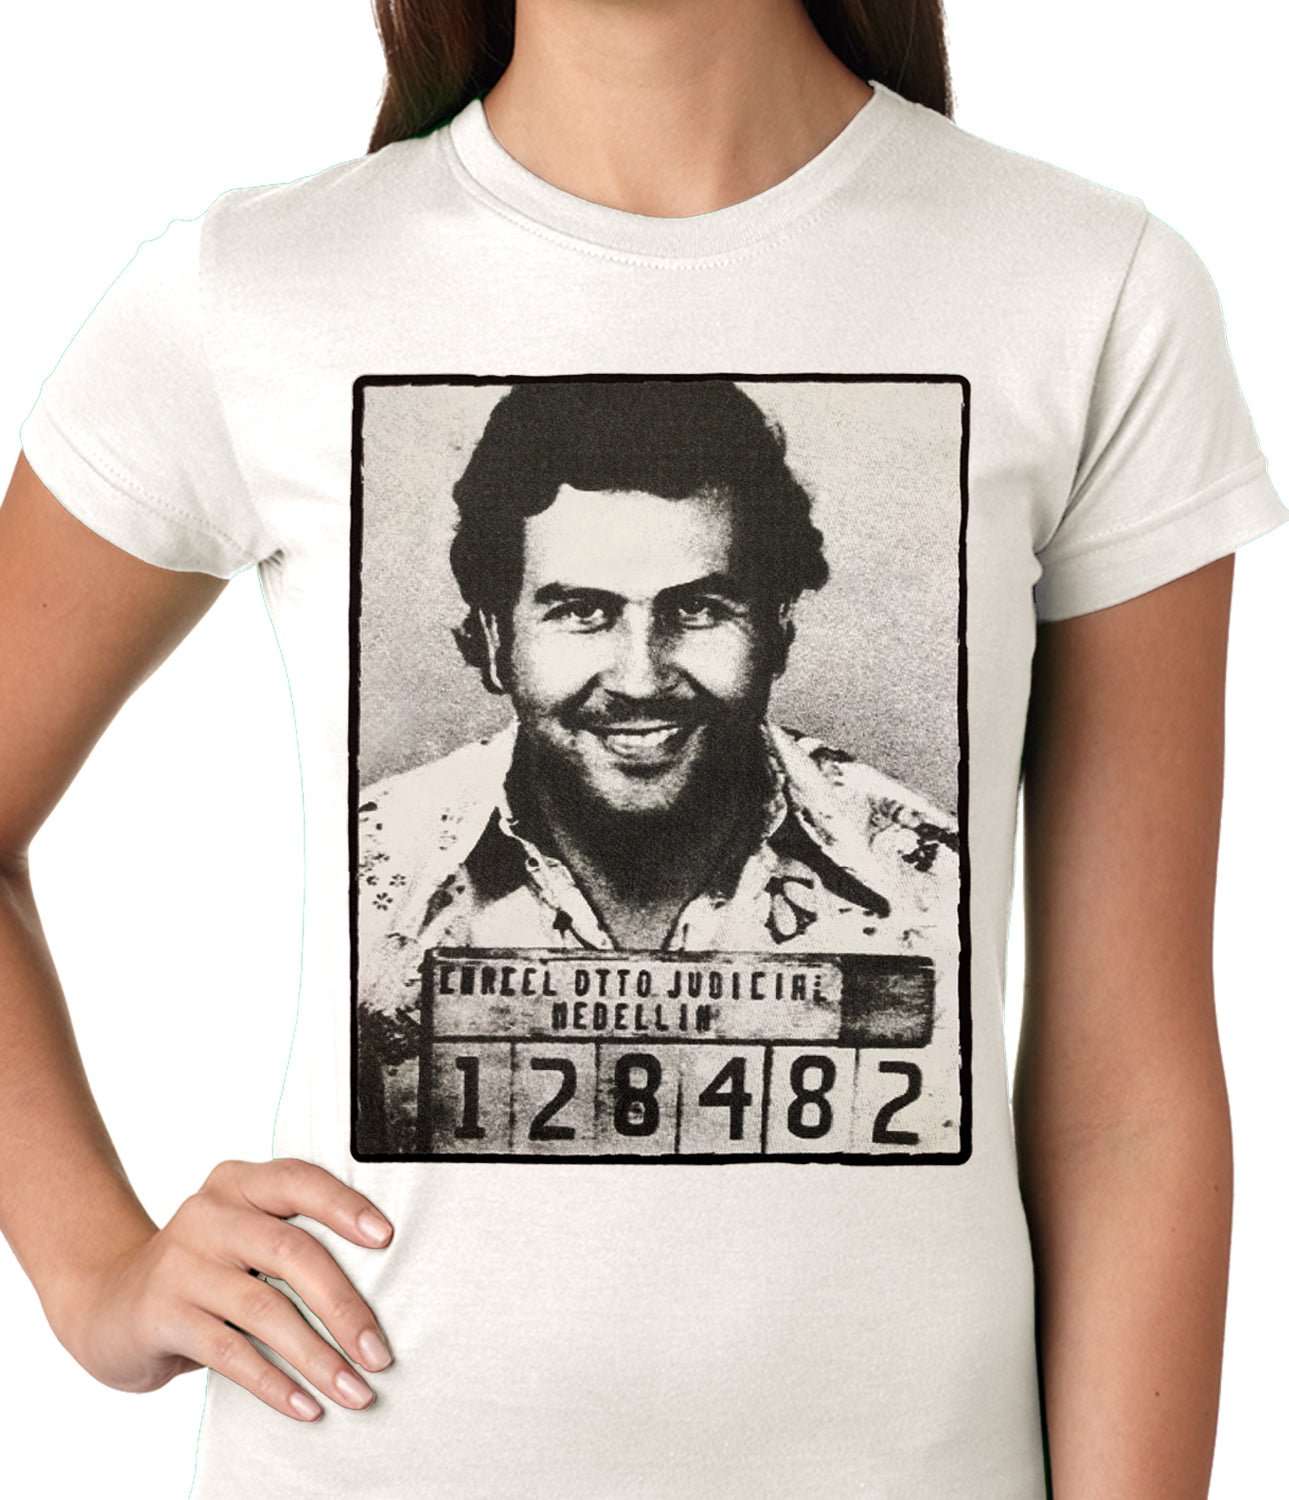 Pablo Escobar Smiling Mug Shot Ladies T-shirt